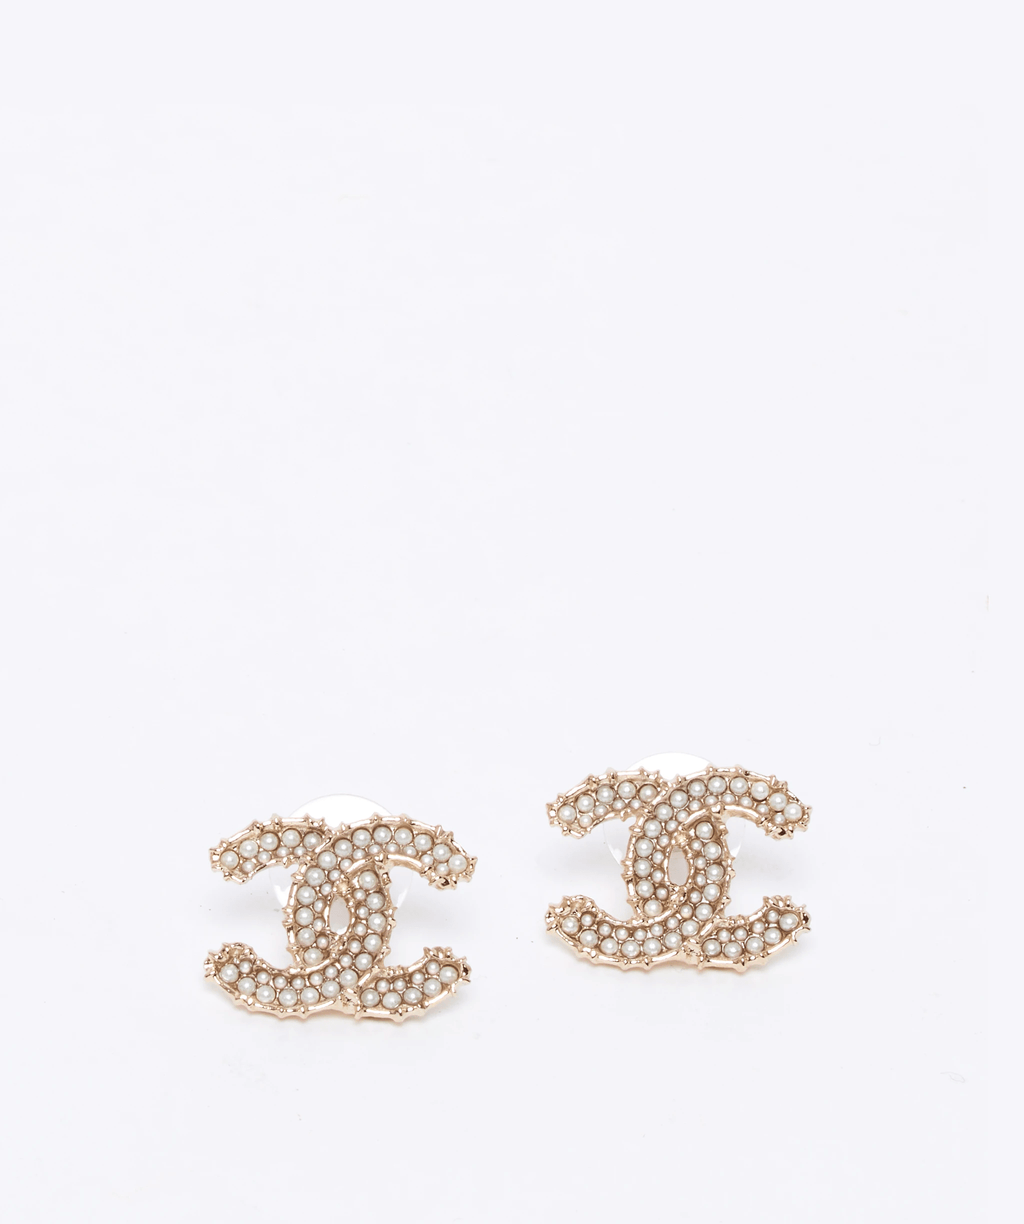 Diamond Hoop Earrings With Pearl - 218 For Sale on 1stDibs